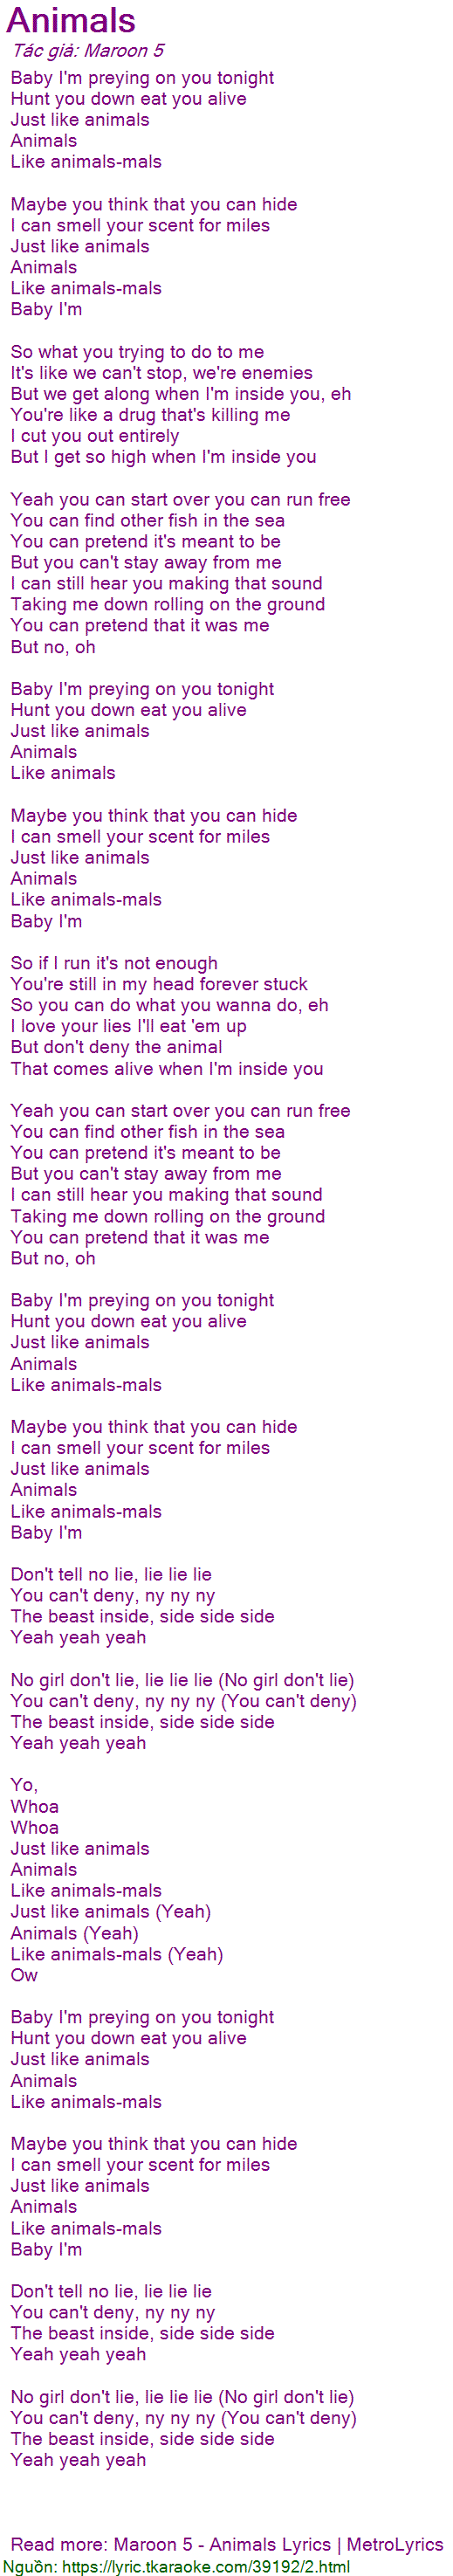 Loi bai hat Animals (Maroon 5) [co nhac nghe]